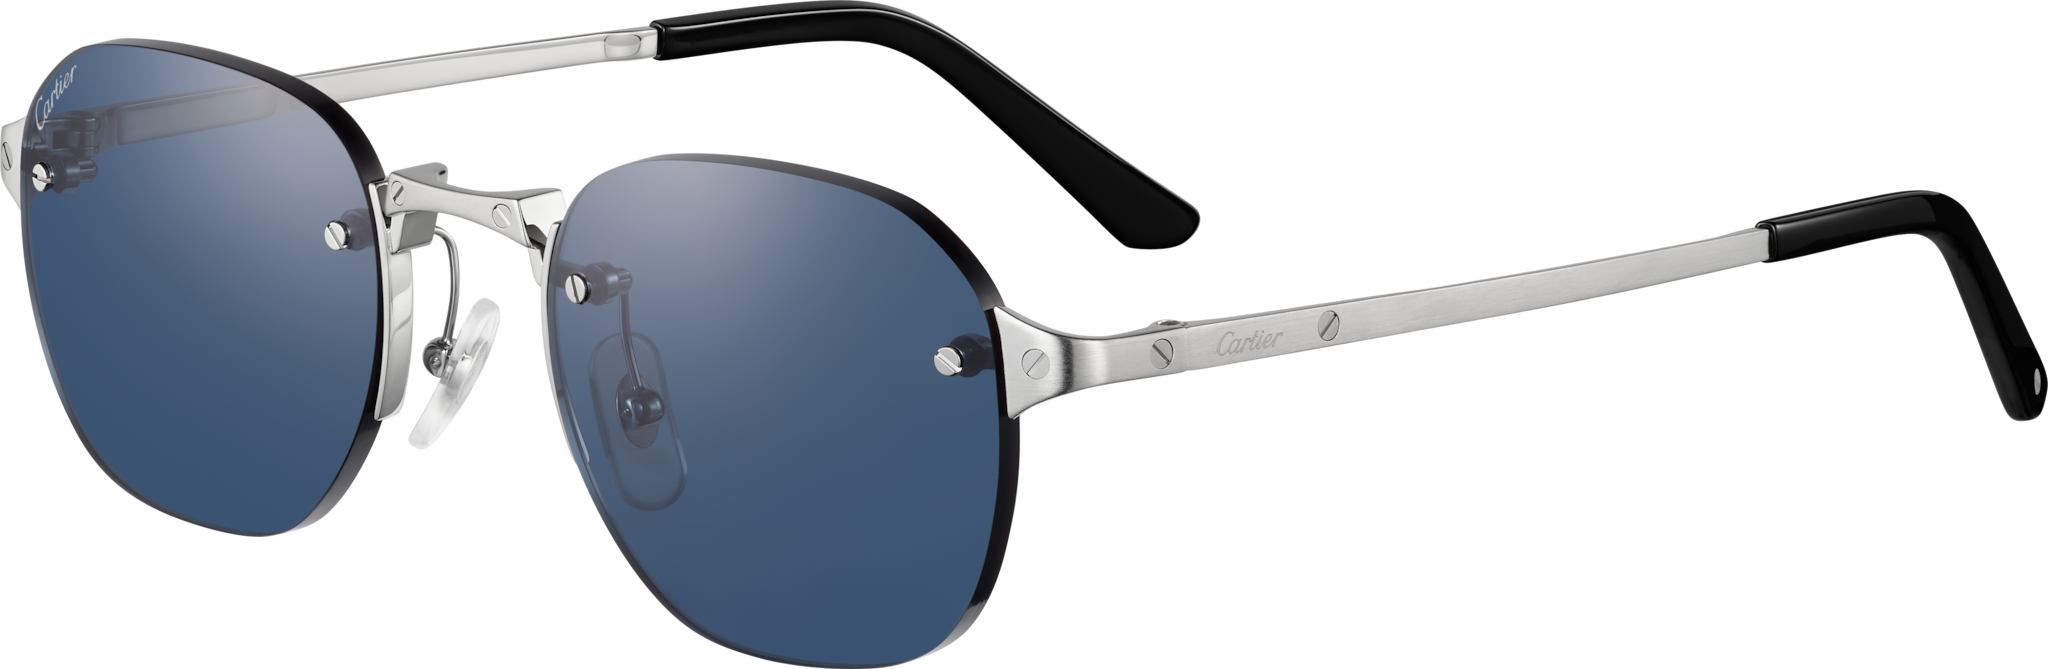 Gafas de sol Santos de CartierMetal acabado platino liso y cepillado, lentes azules